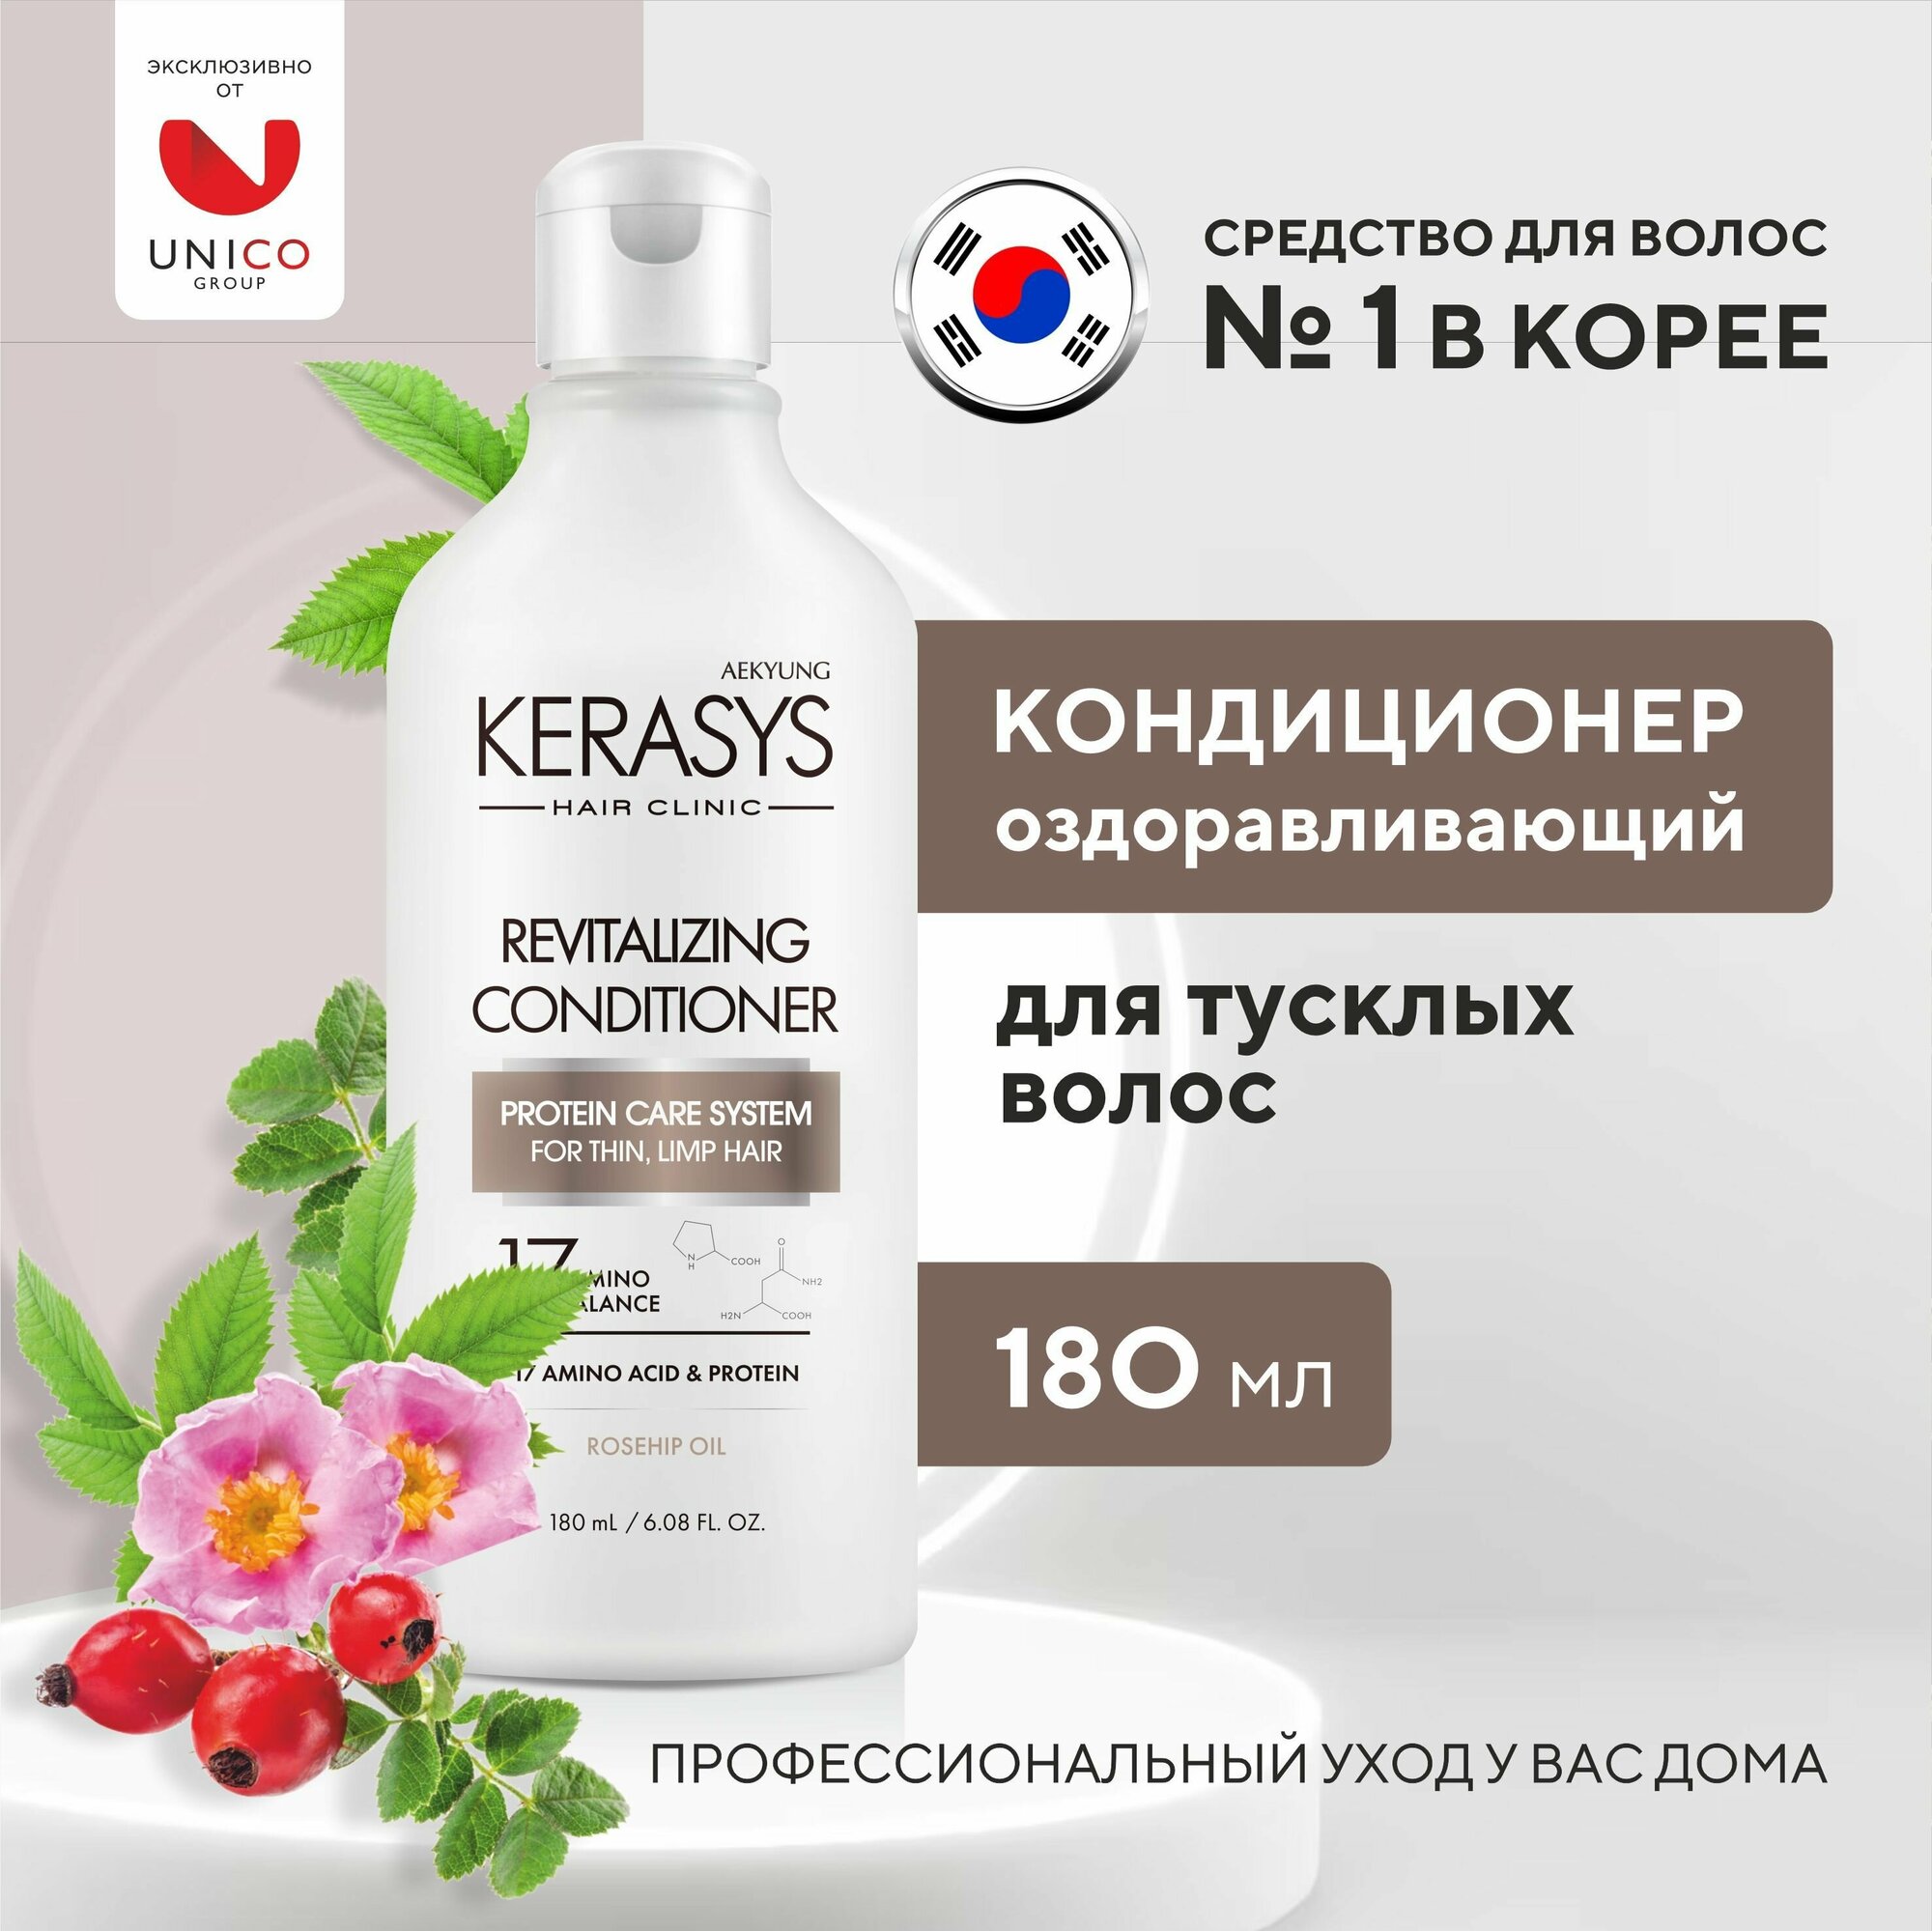 Kerasys Кондиционер для волос оздоравливающий 180 мл корейский протеиновый бальзам для тусклых и уставших волос с витаминами, женский Корея